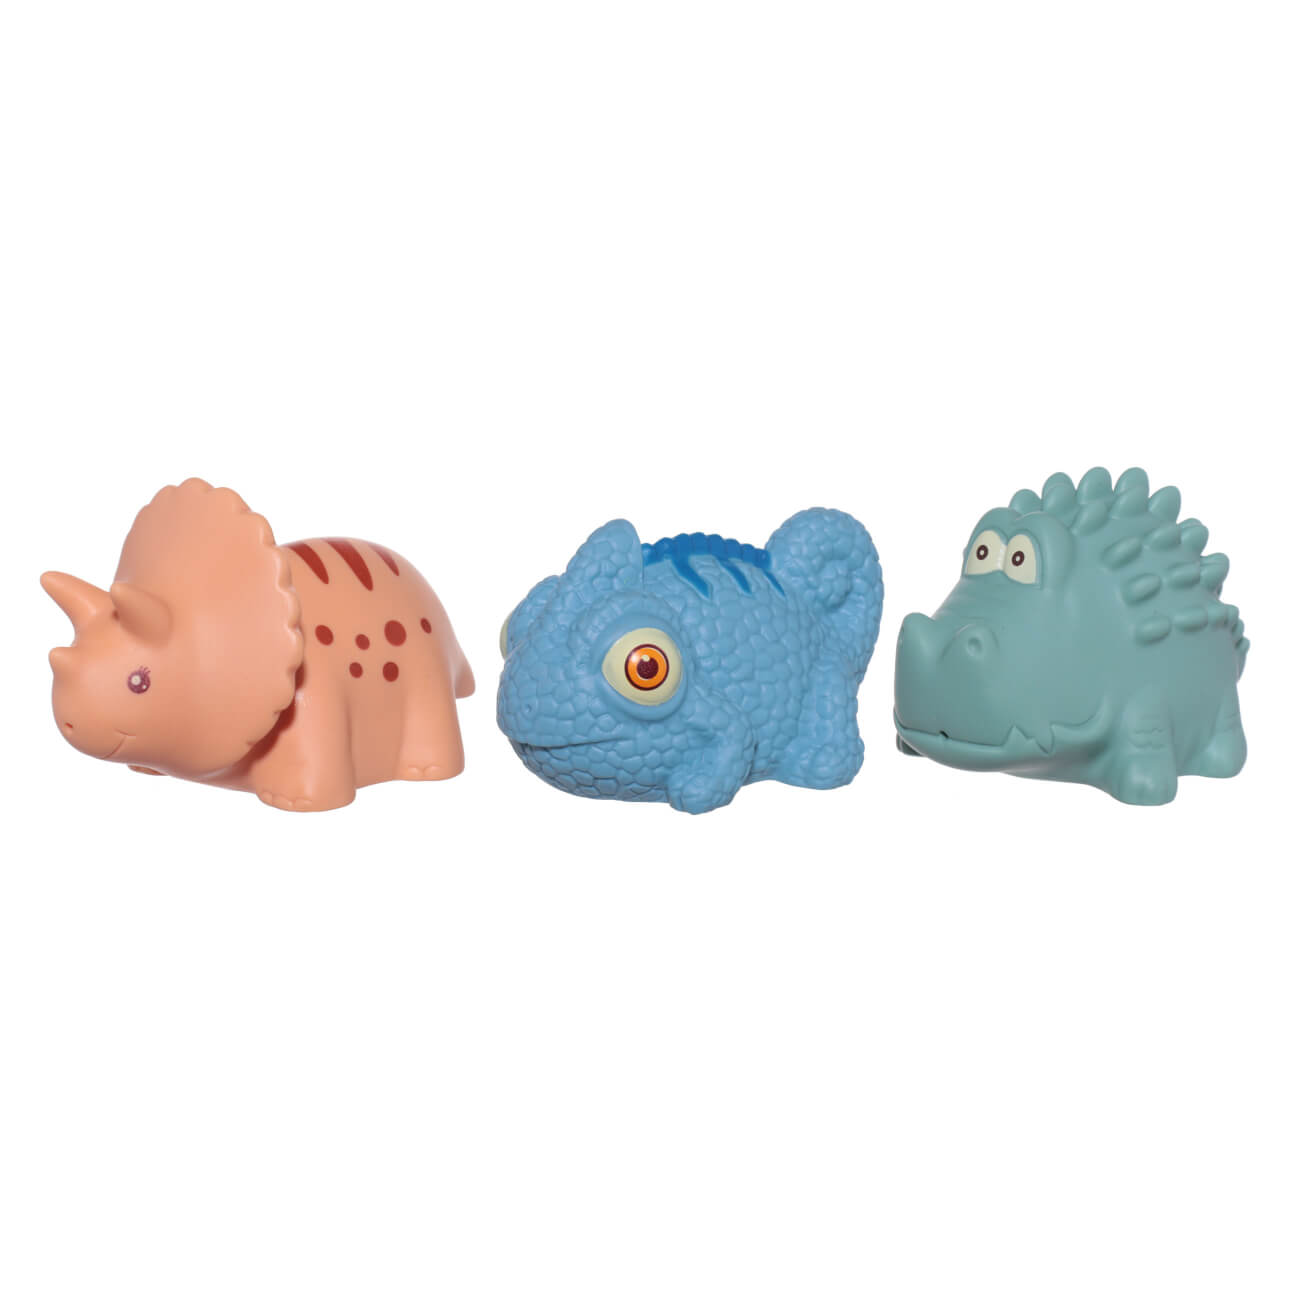 Набор игрушек для купания, 3 пр, ПВХ, цветной, Хамелеон/Динозавр/Крокодил, Kiddy набор игрушек для ванной купания